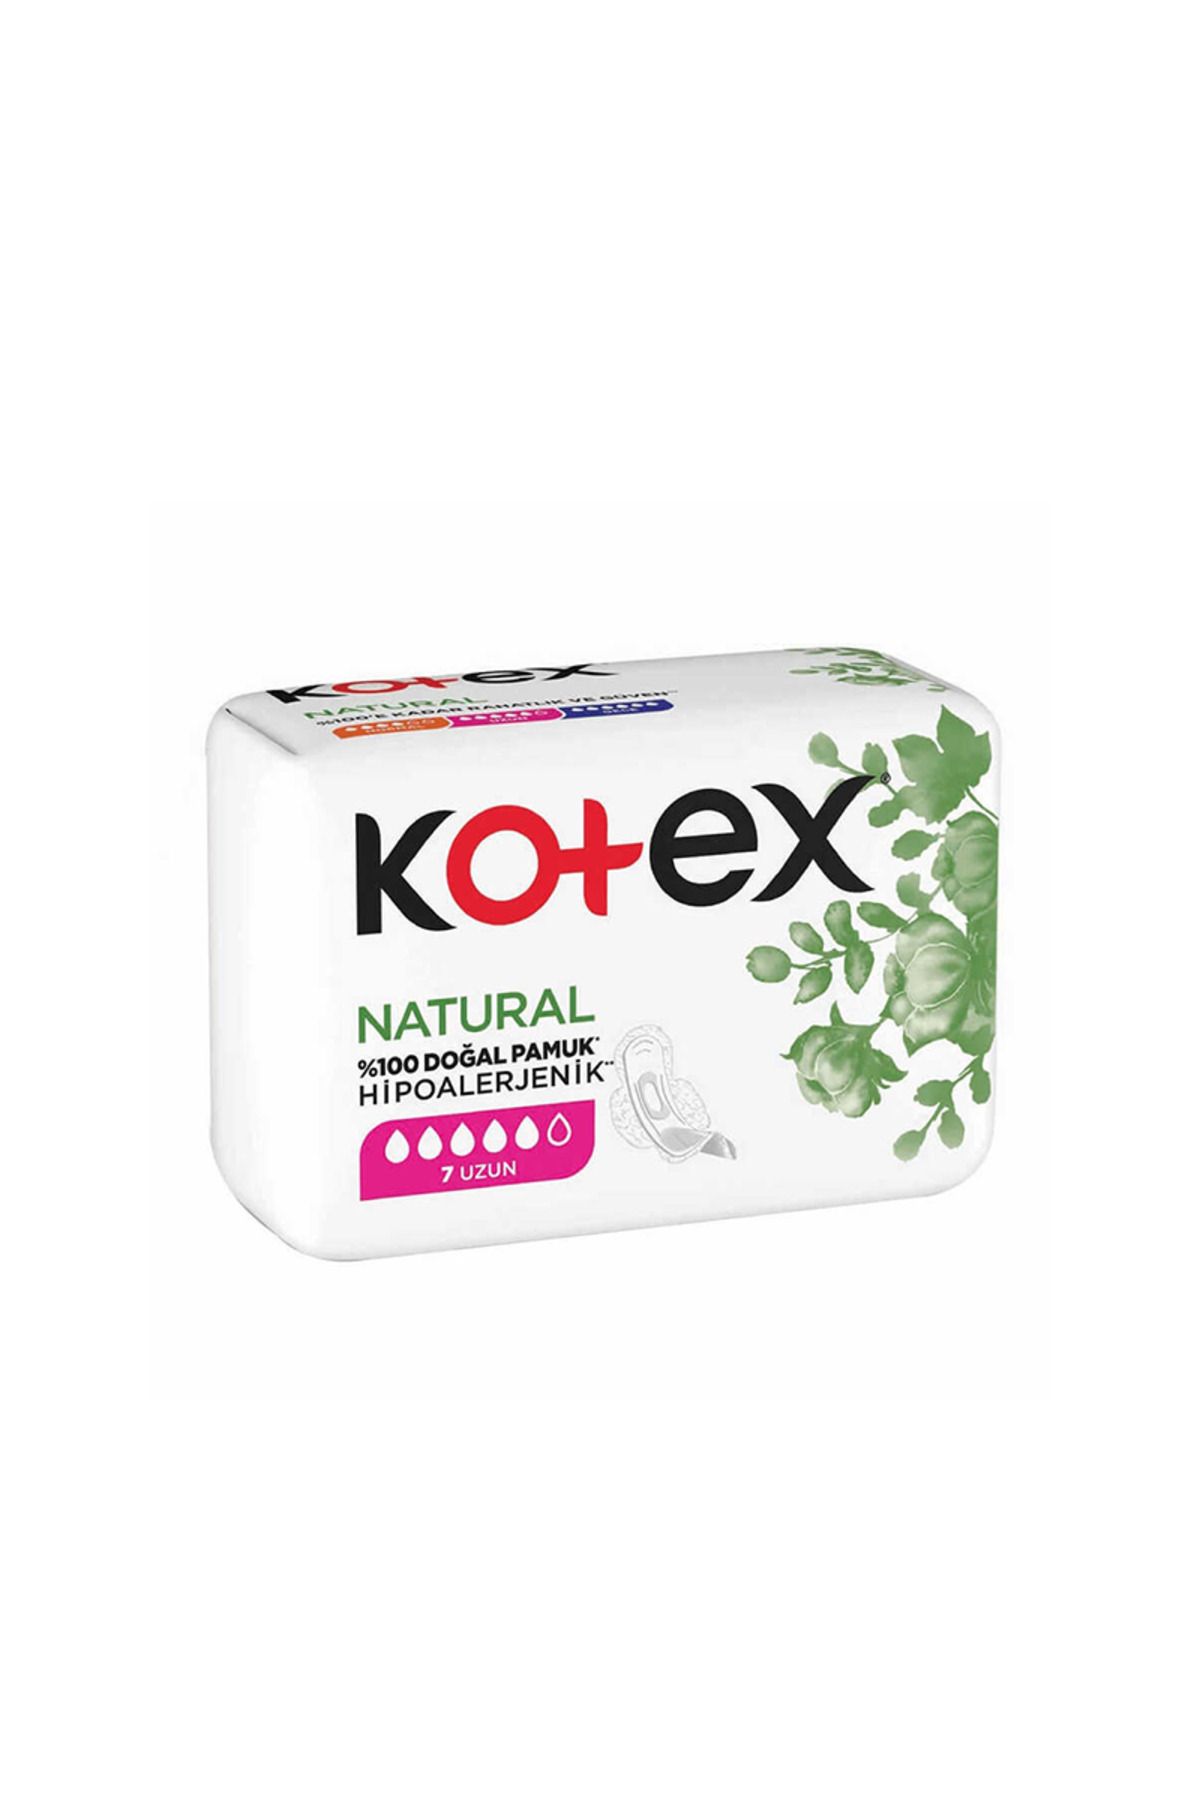 Kotex Natural 7 Uzun Ped